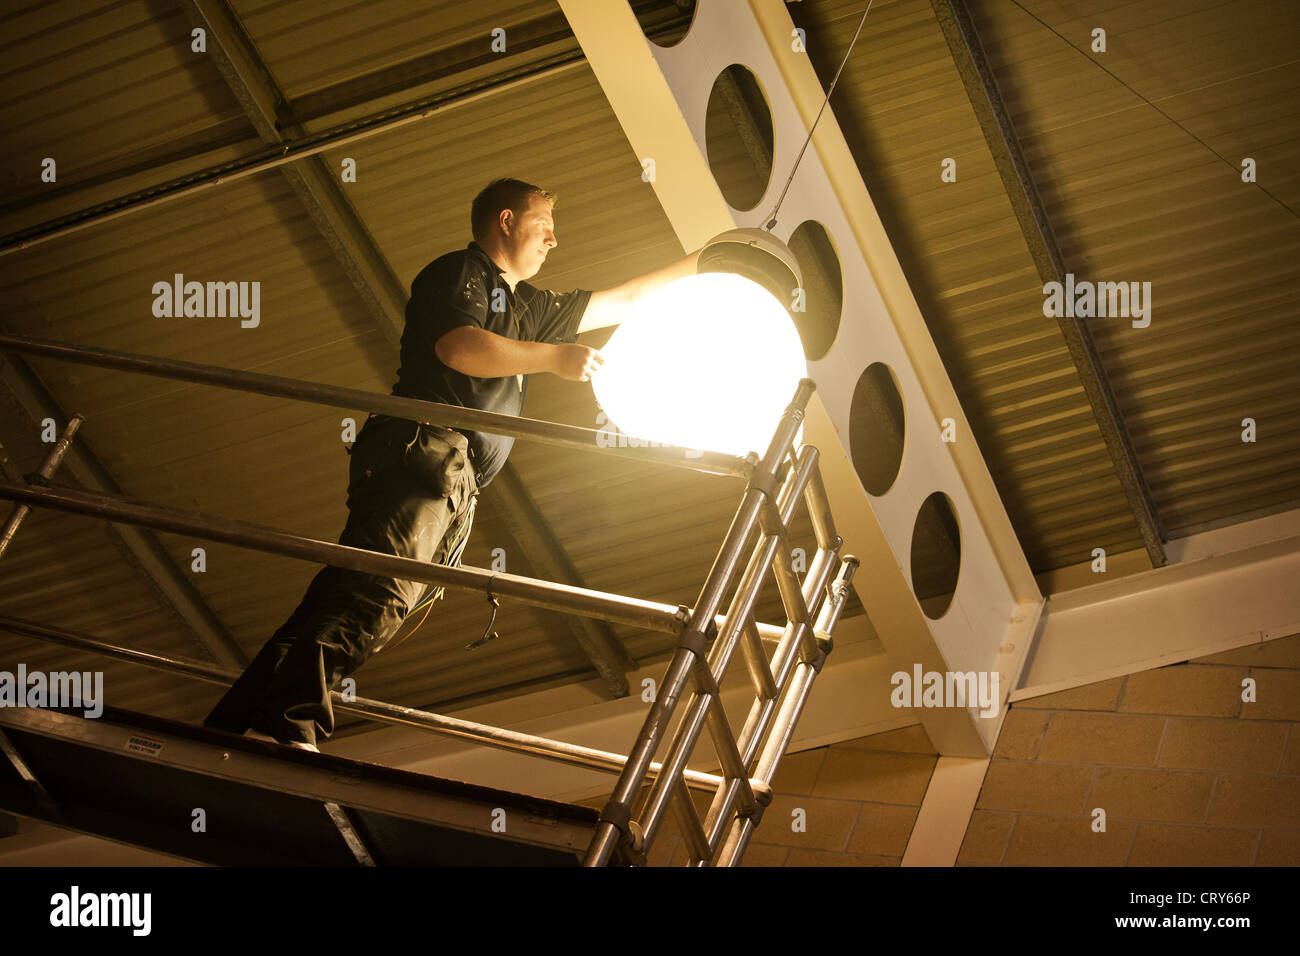 Changements Workman lampe à vapeurs de sodium ampoule en sports hall roof sur des échafaudages Banque D'Images